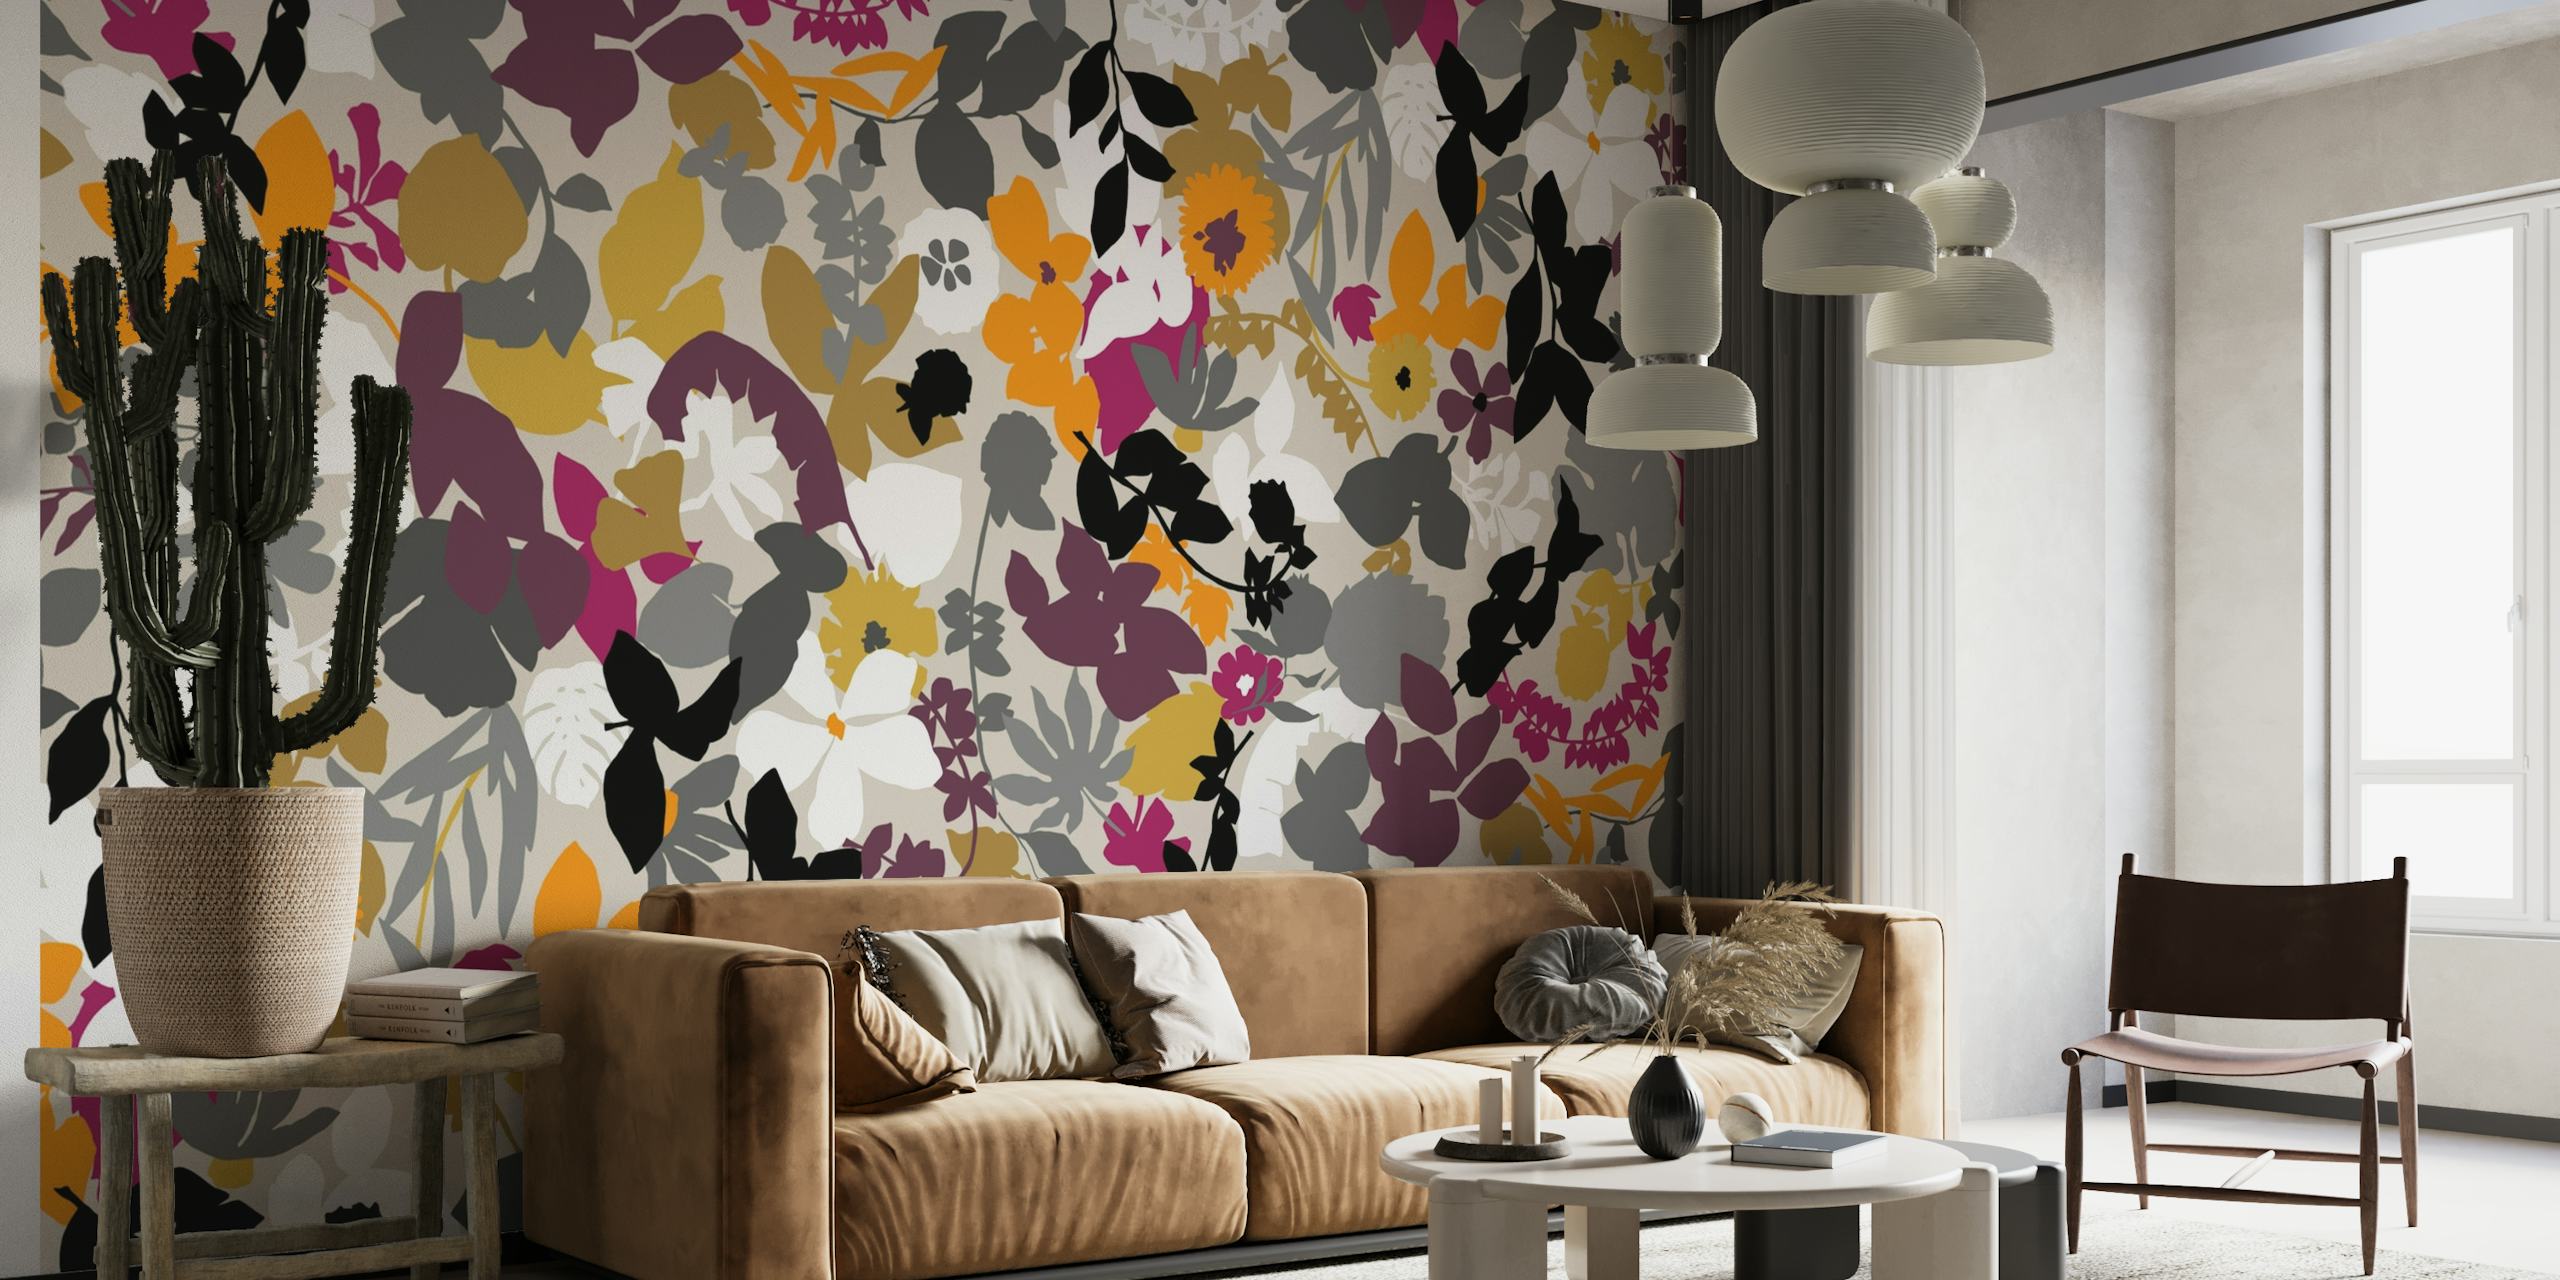 Zidna slika s apstraktnim lišćem u bojama senfa, sive i ljubičaste boje